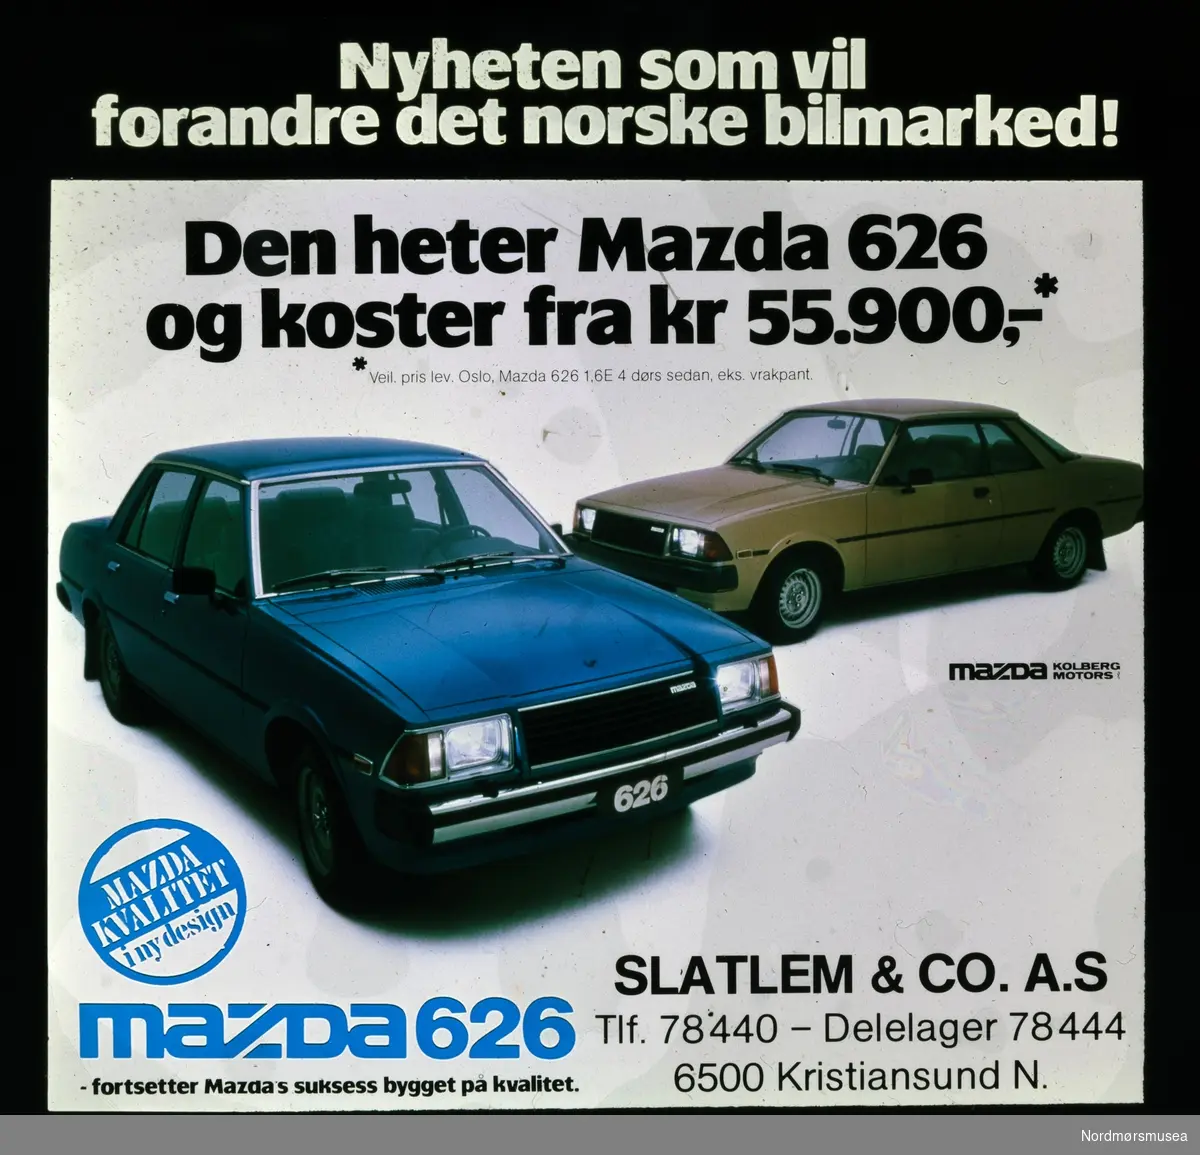 Kinoreklame for Mazda 626 fra Slatlem & Co. A.S. Kinoreklame fra Kristiansund, hovedsaklig fra perioden 1950 til 1980.